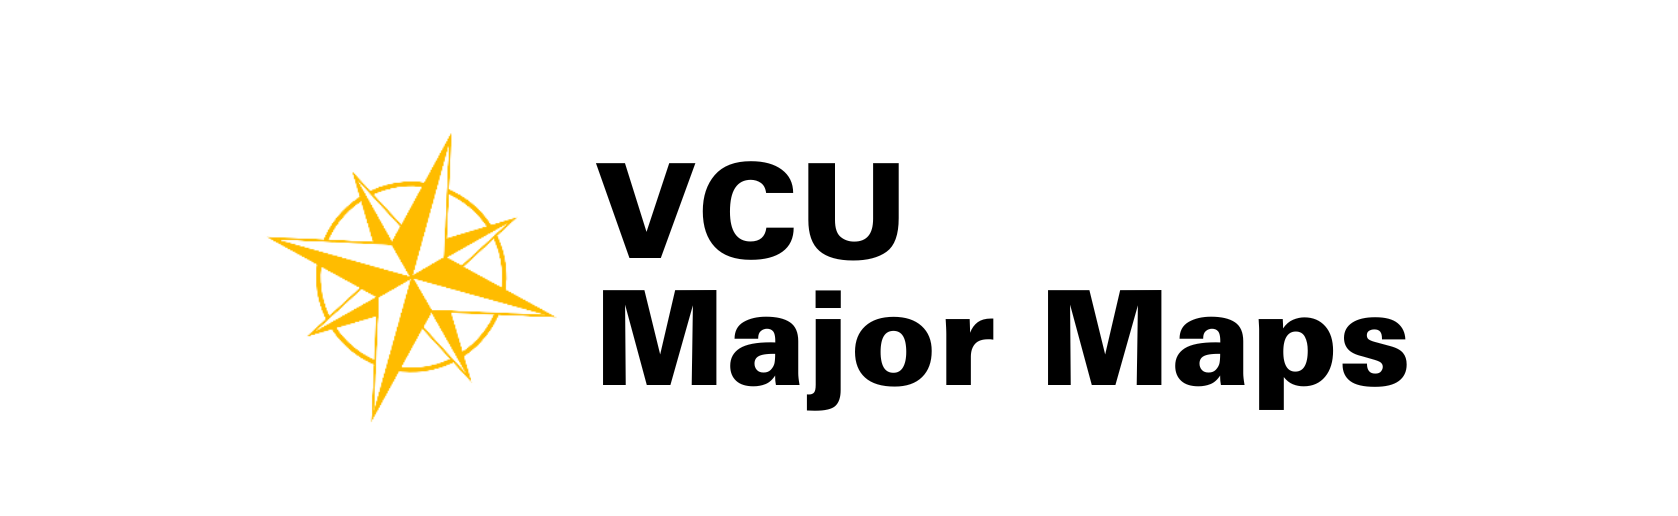 VCU Major Maps